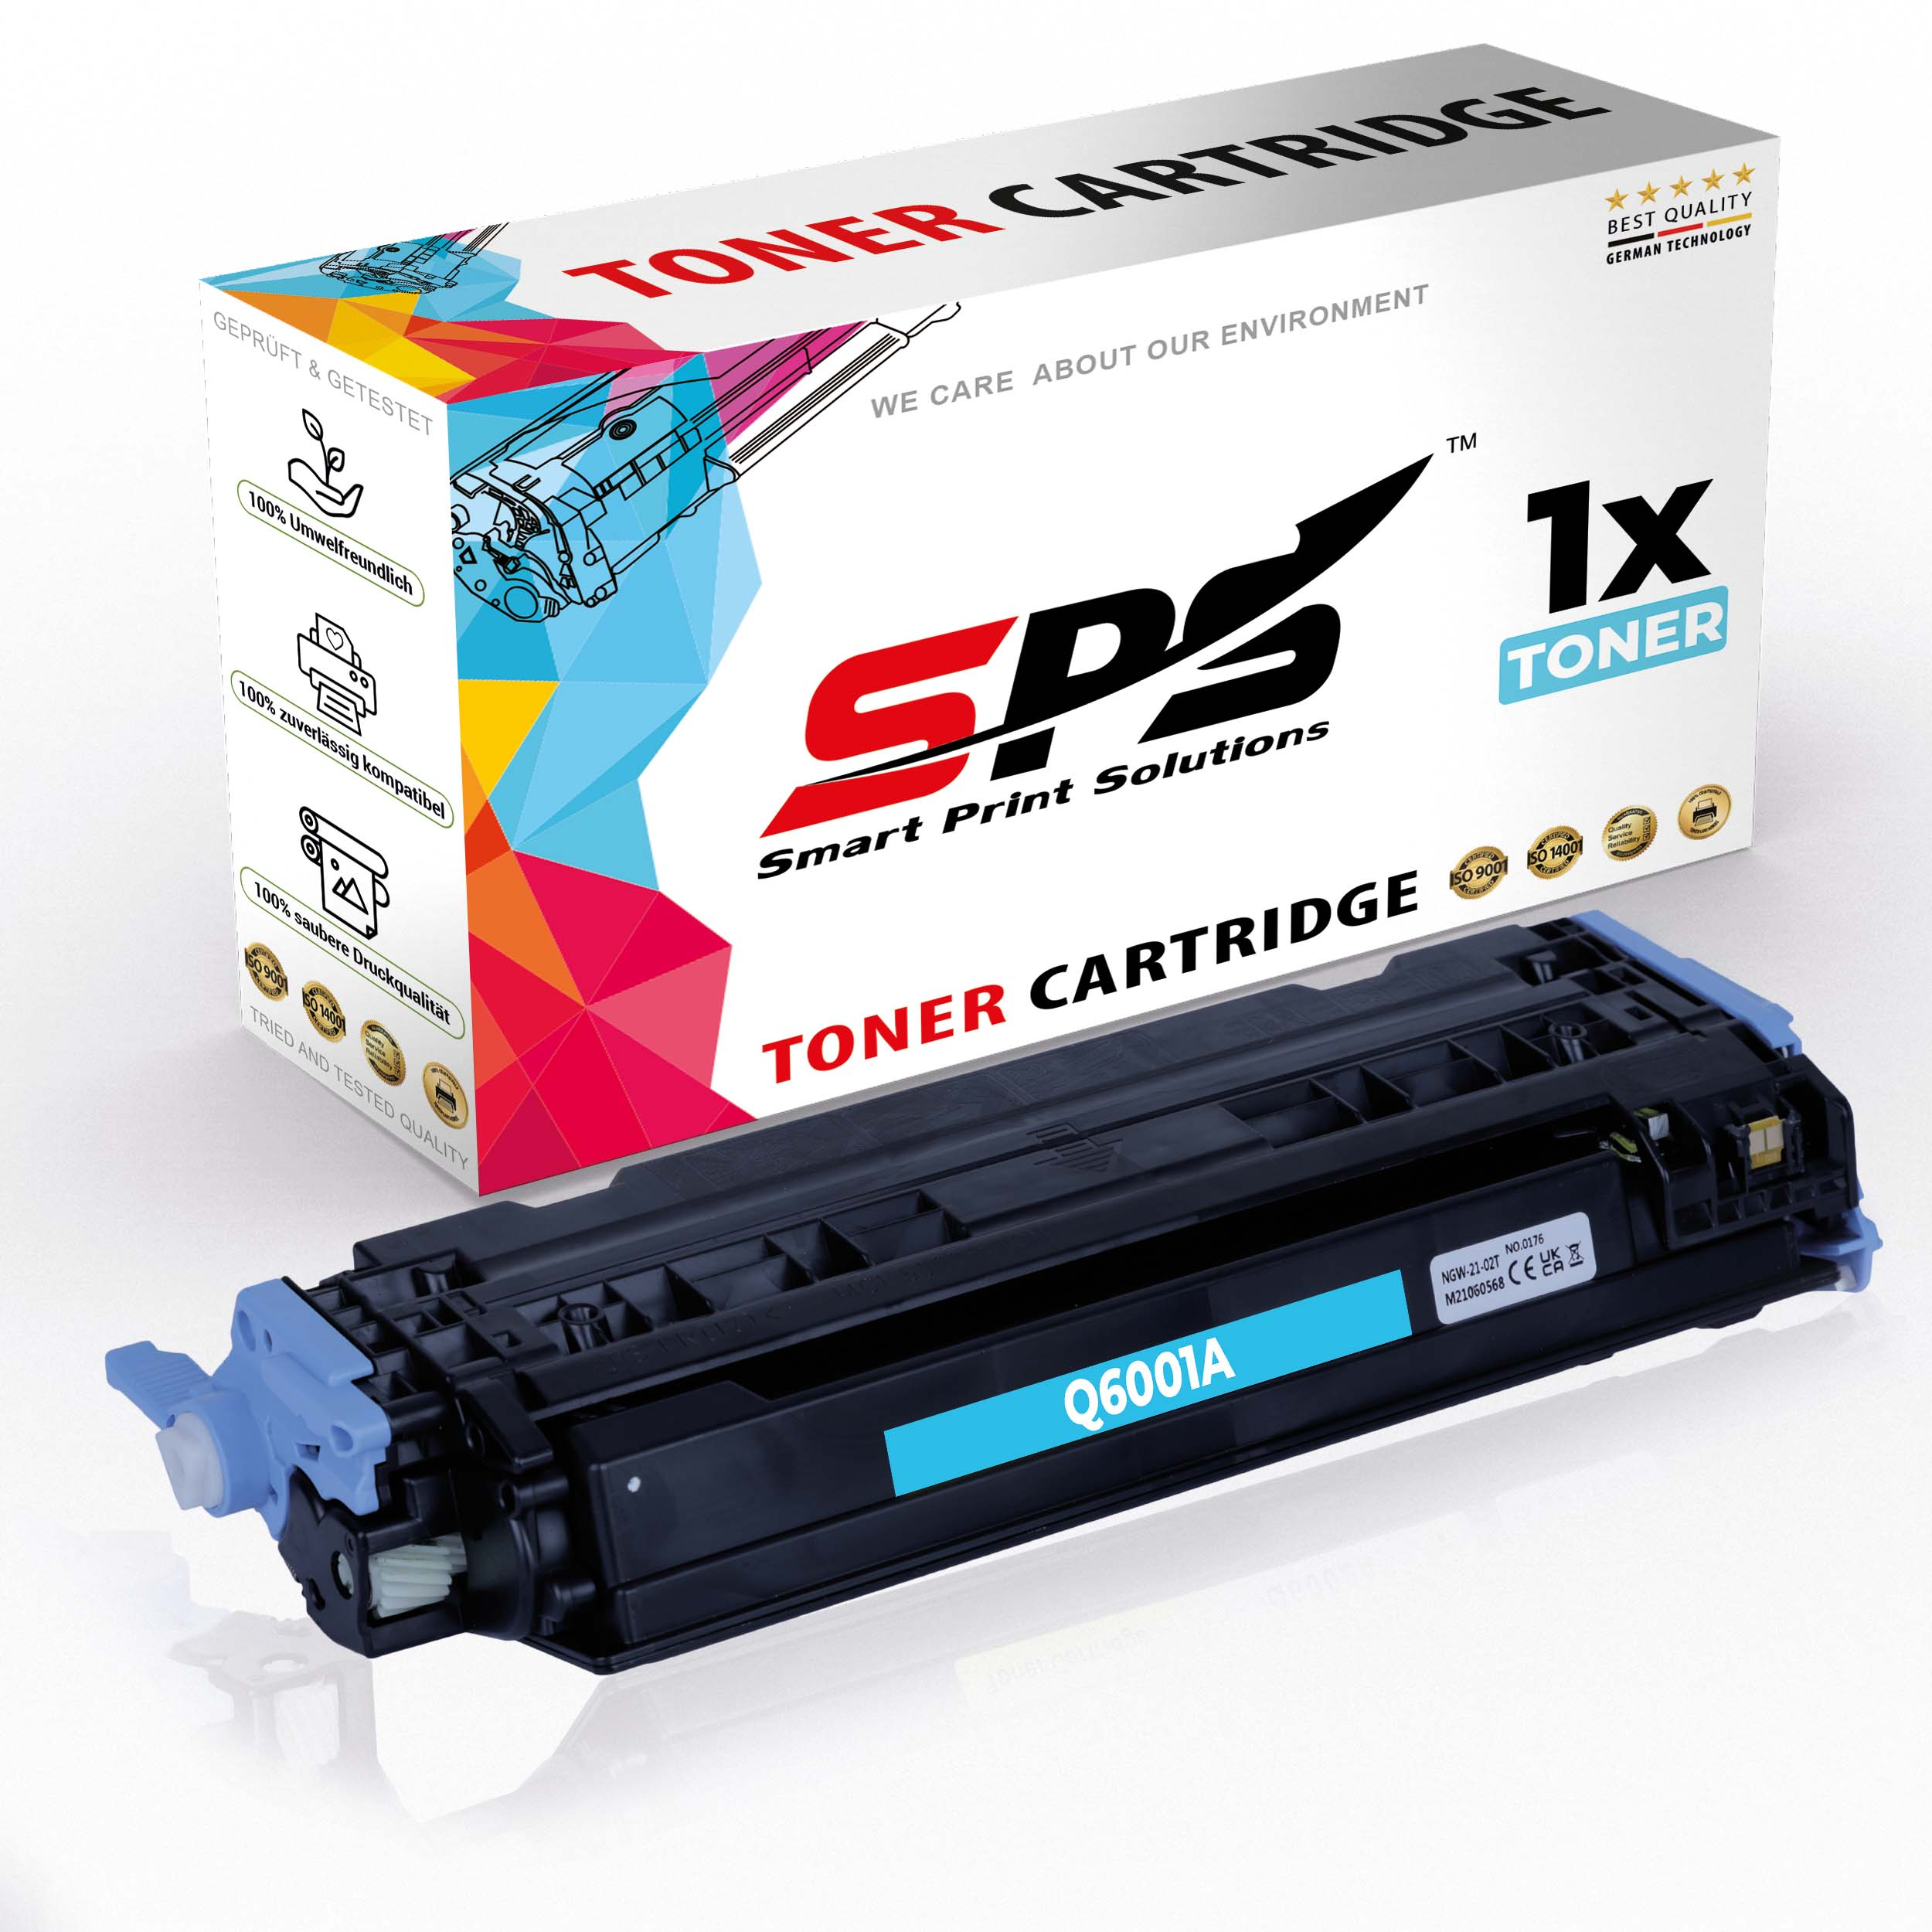 S-8186 MFP) Color Laserjet SPS Toner CM1017 Cyan / (Q6001A 124A